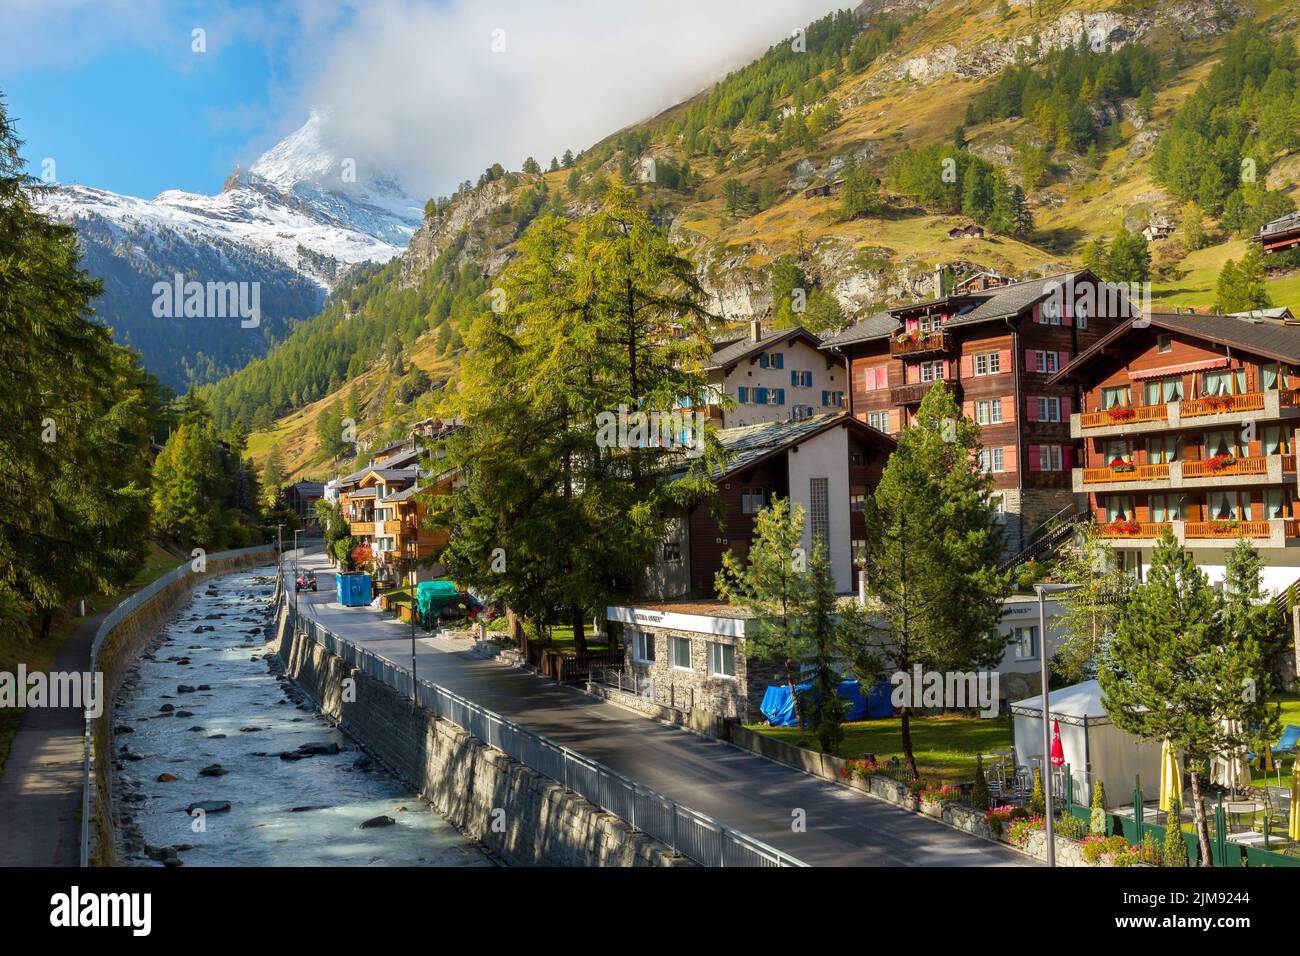 Zermatt, Svizzera - 7 ottobre 2019: Vista sulla strada della città nella famosa stazione sciistica delle Alpi svizzere, sul fiume, sulla cima del monte della neve del Cervino Foto Stock